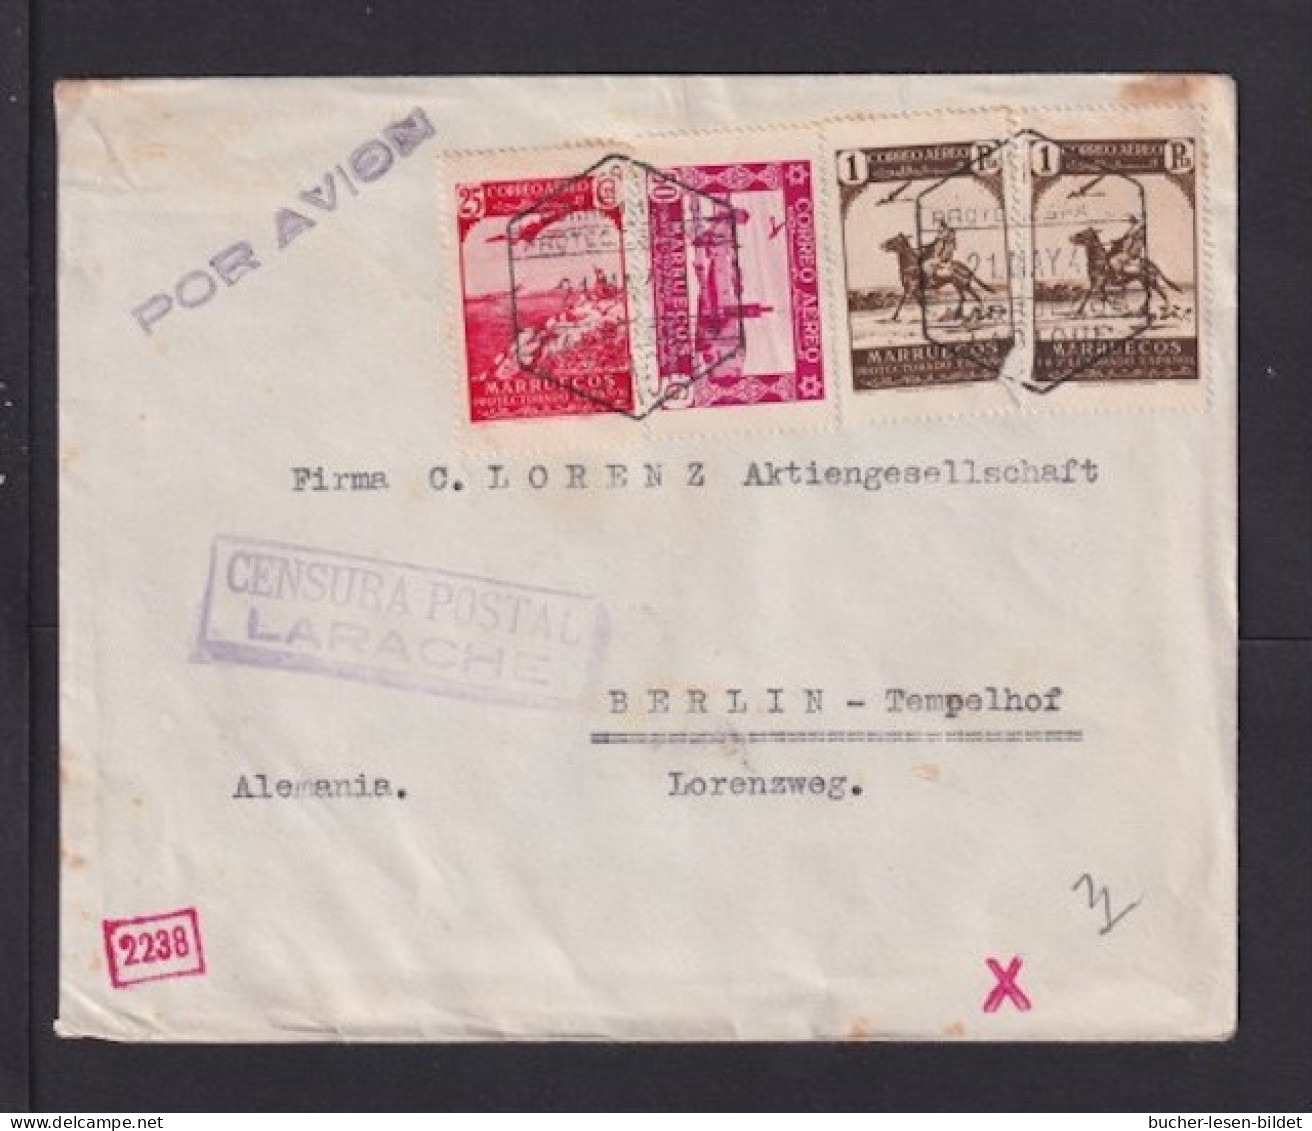 1941 - Luftpostbrief Ab LARACHE Nach Berlin - Zensur - Spaans-Marokko